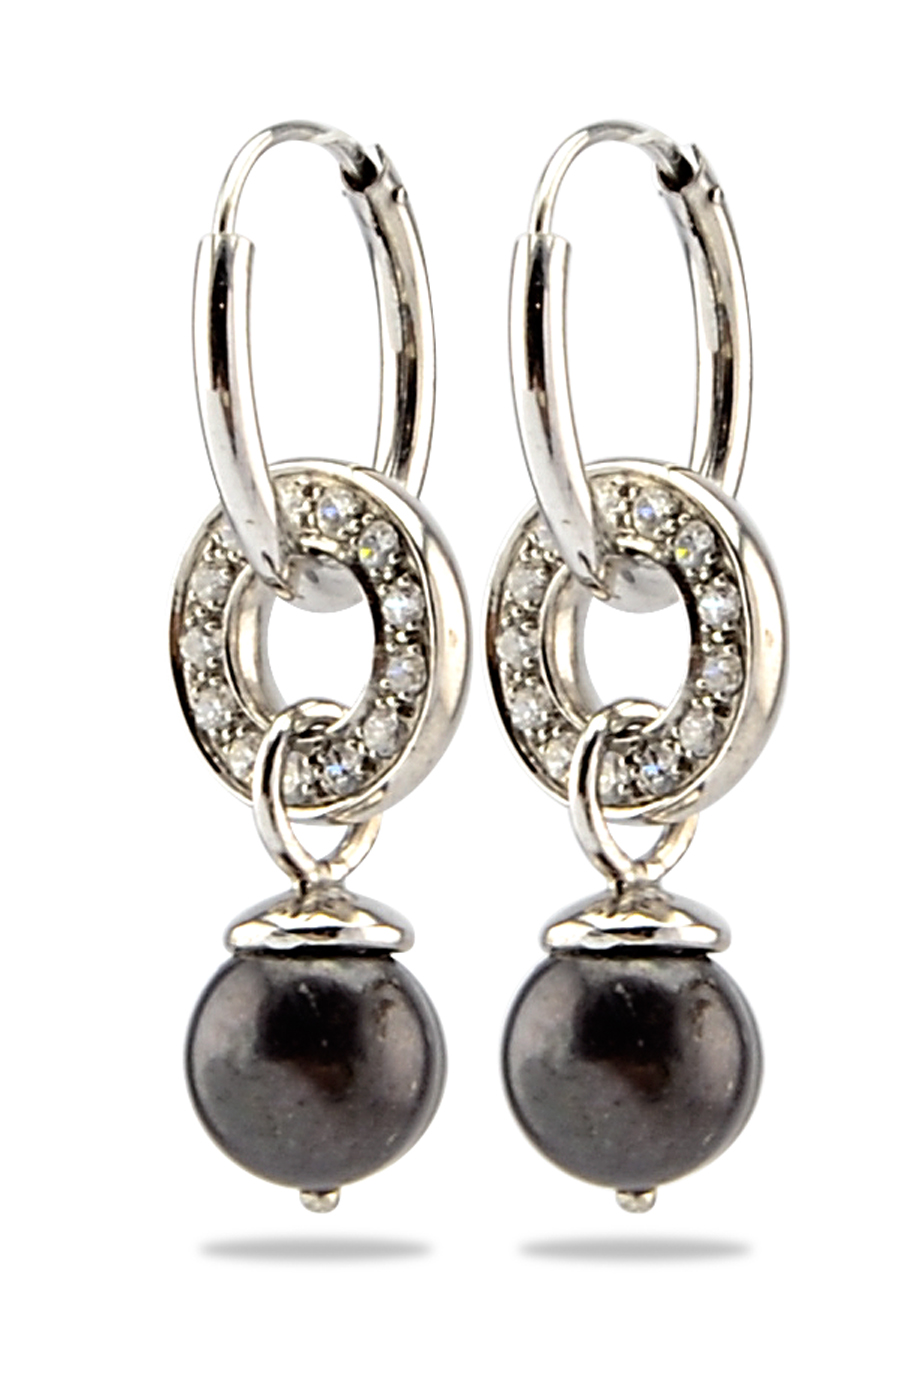 Single Crystal Pearl Silver 925 Hoops Earings/ Black